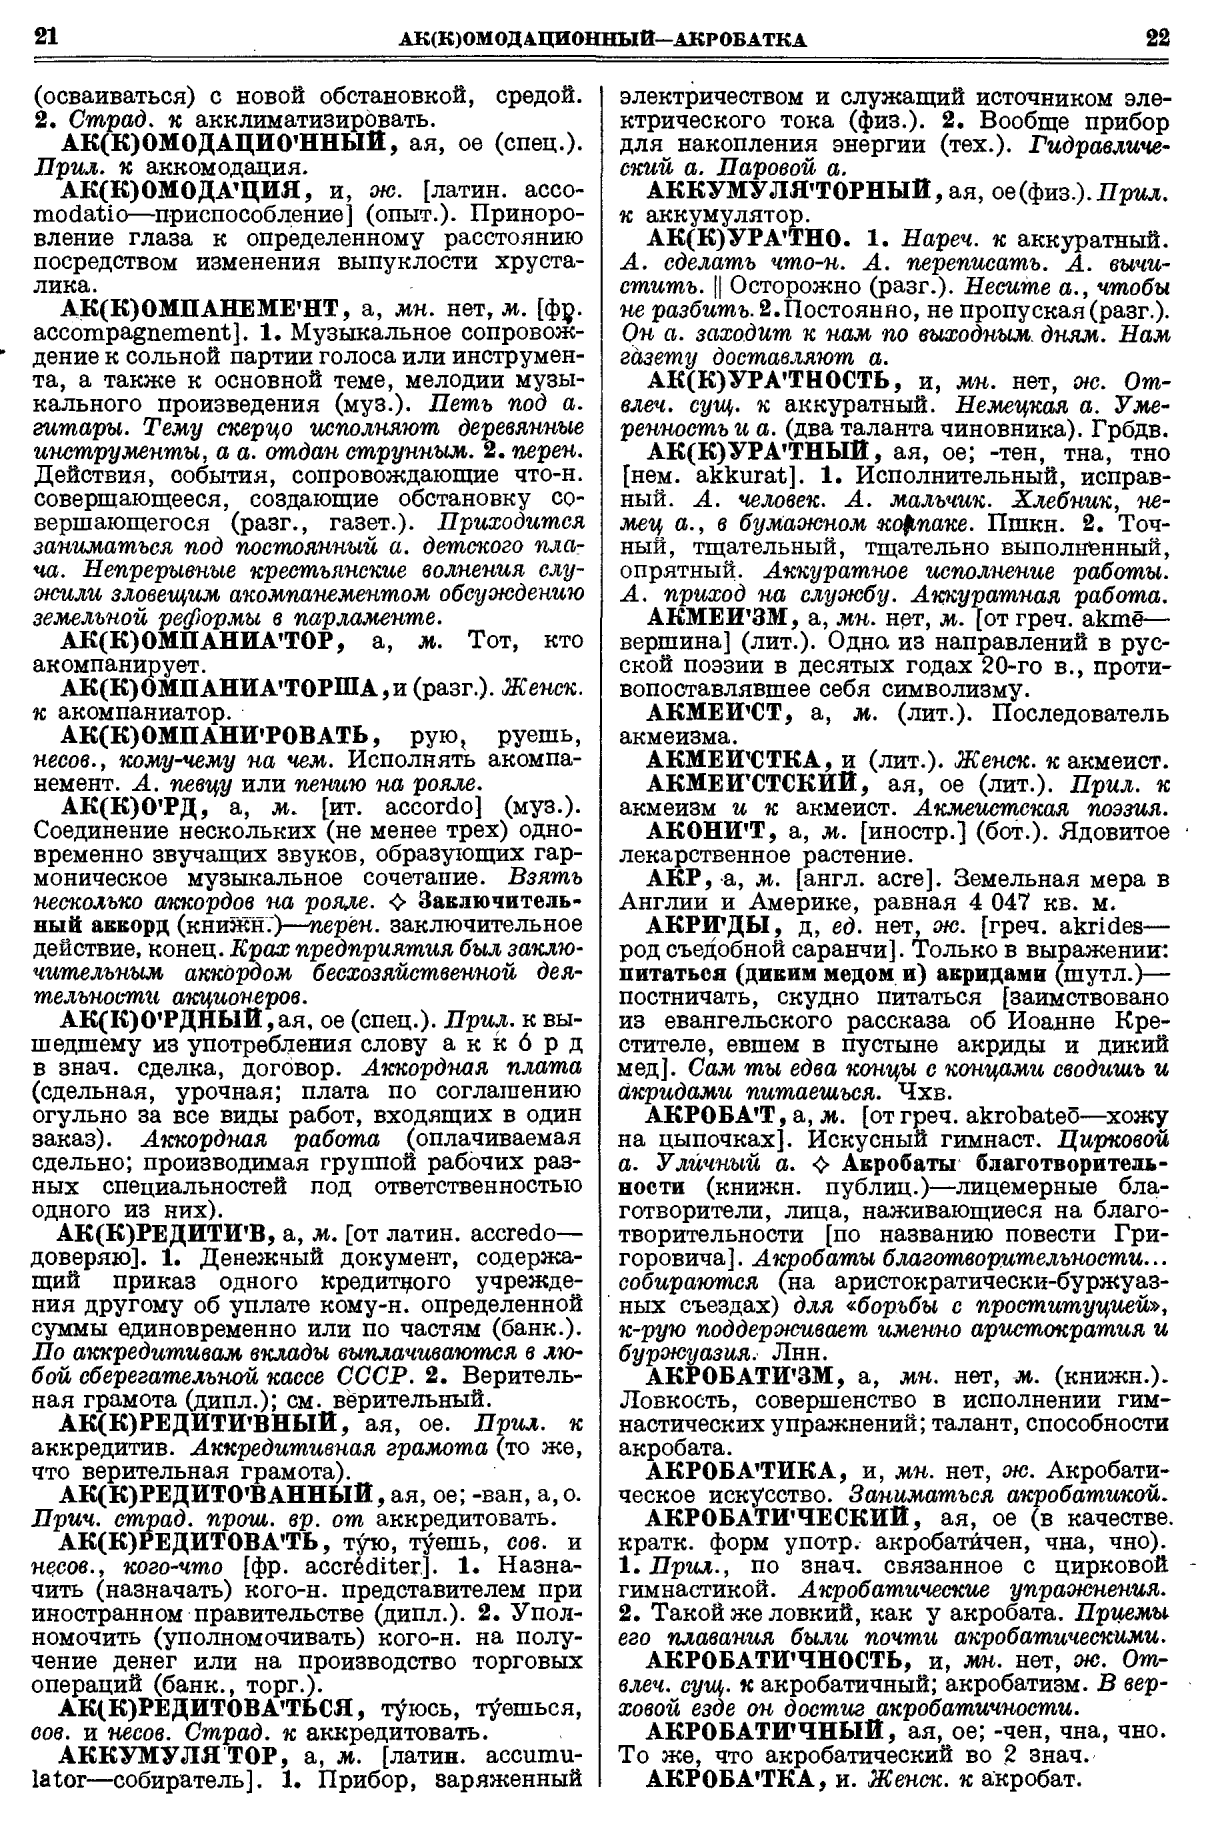 Фотокопия pdf / скан страницы 49 толкового словаря Ушакова (том 1)